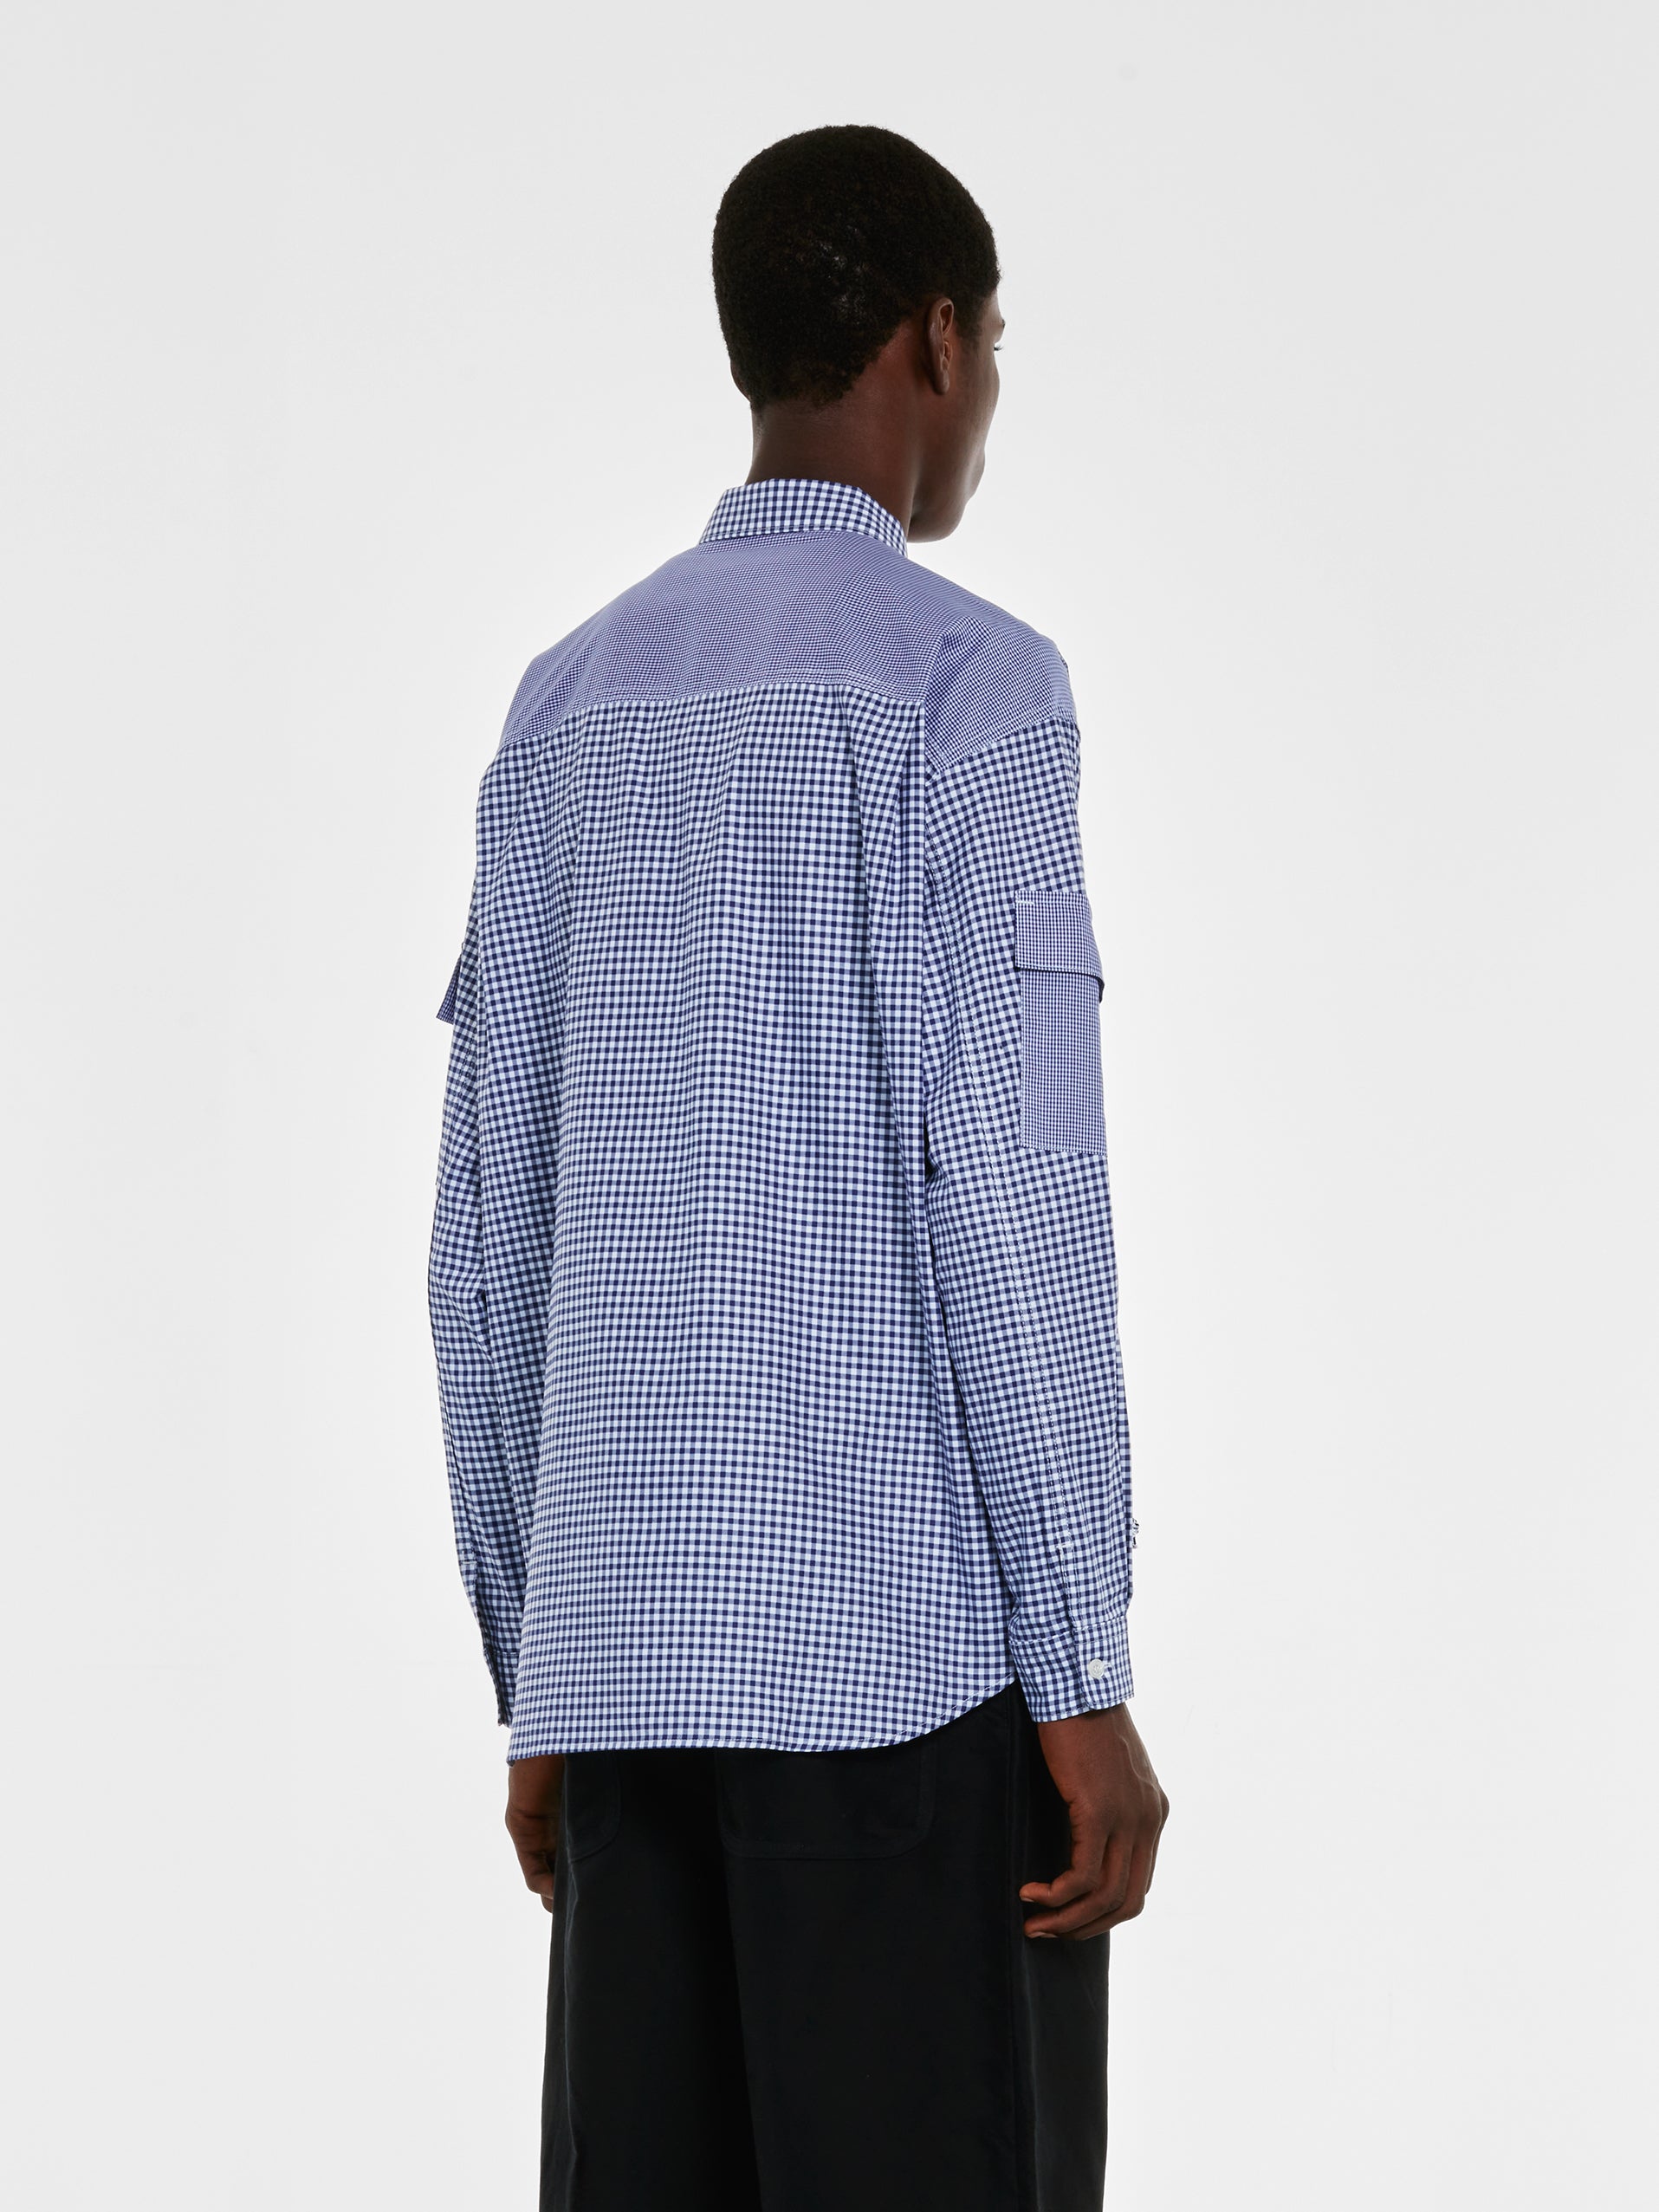 Comme des Garçons Homme - Cotton Utility Shirt - (Blue/White) view 3